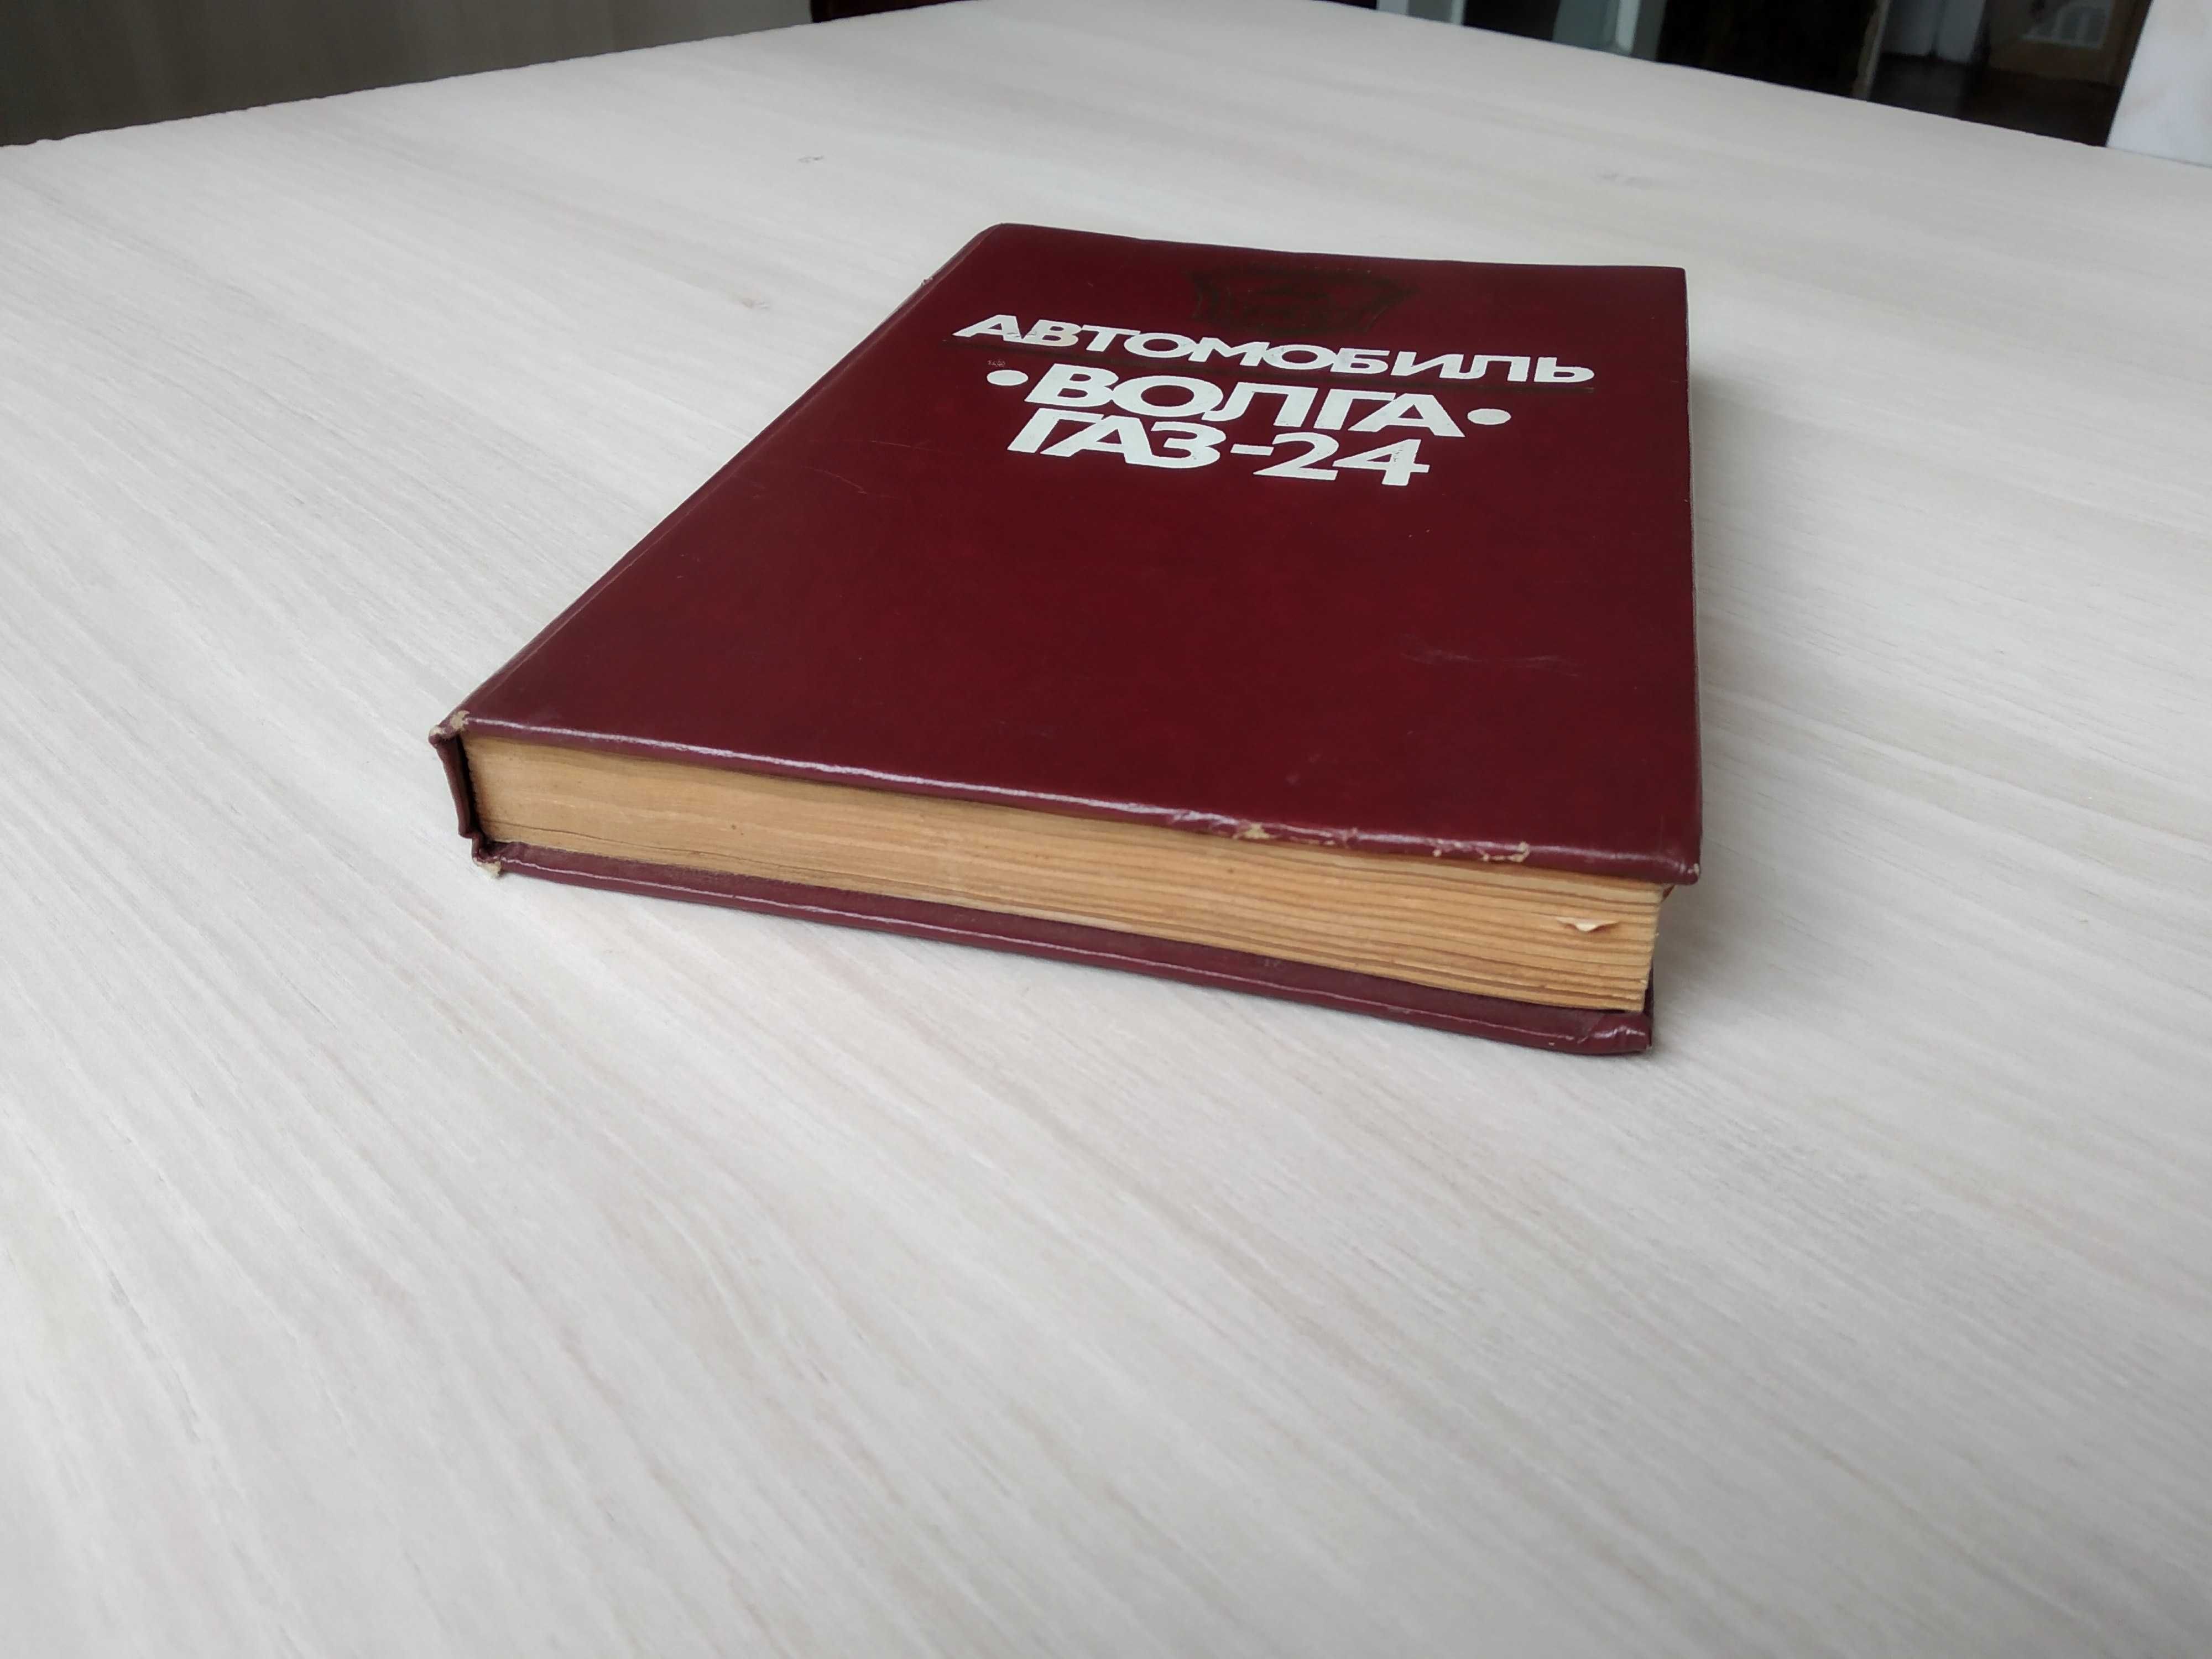 Книга "Автомобиль Волга ГАЗ-24" (особенности, обслуживание и ремонт)